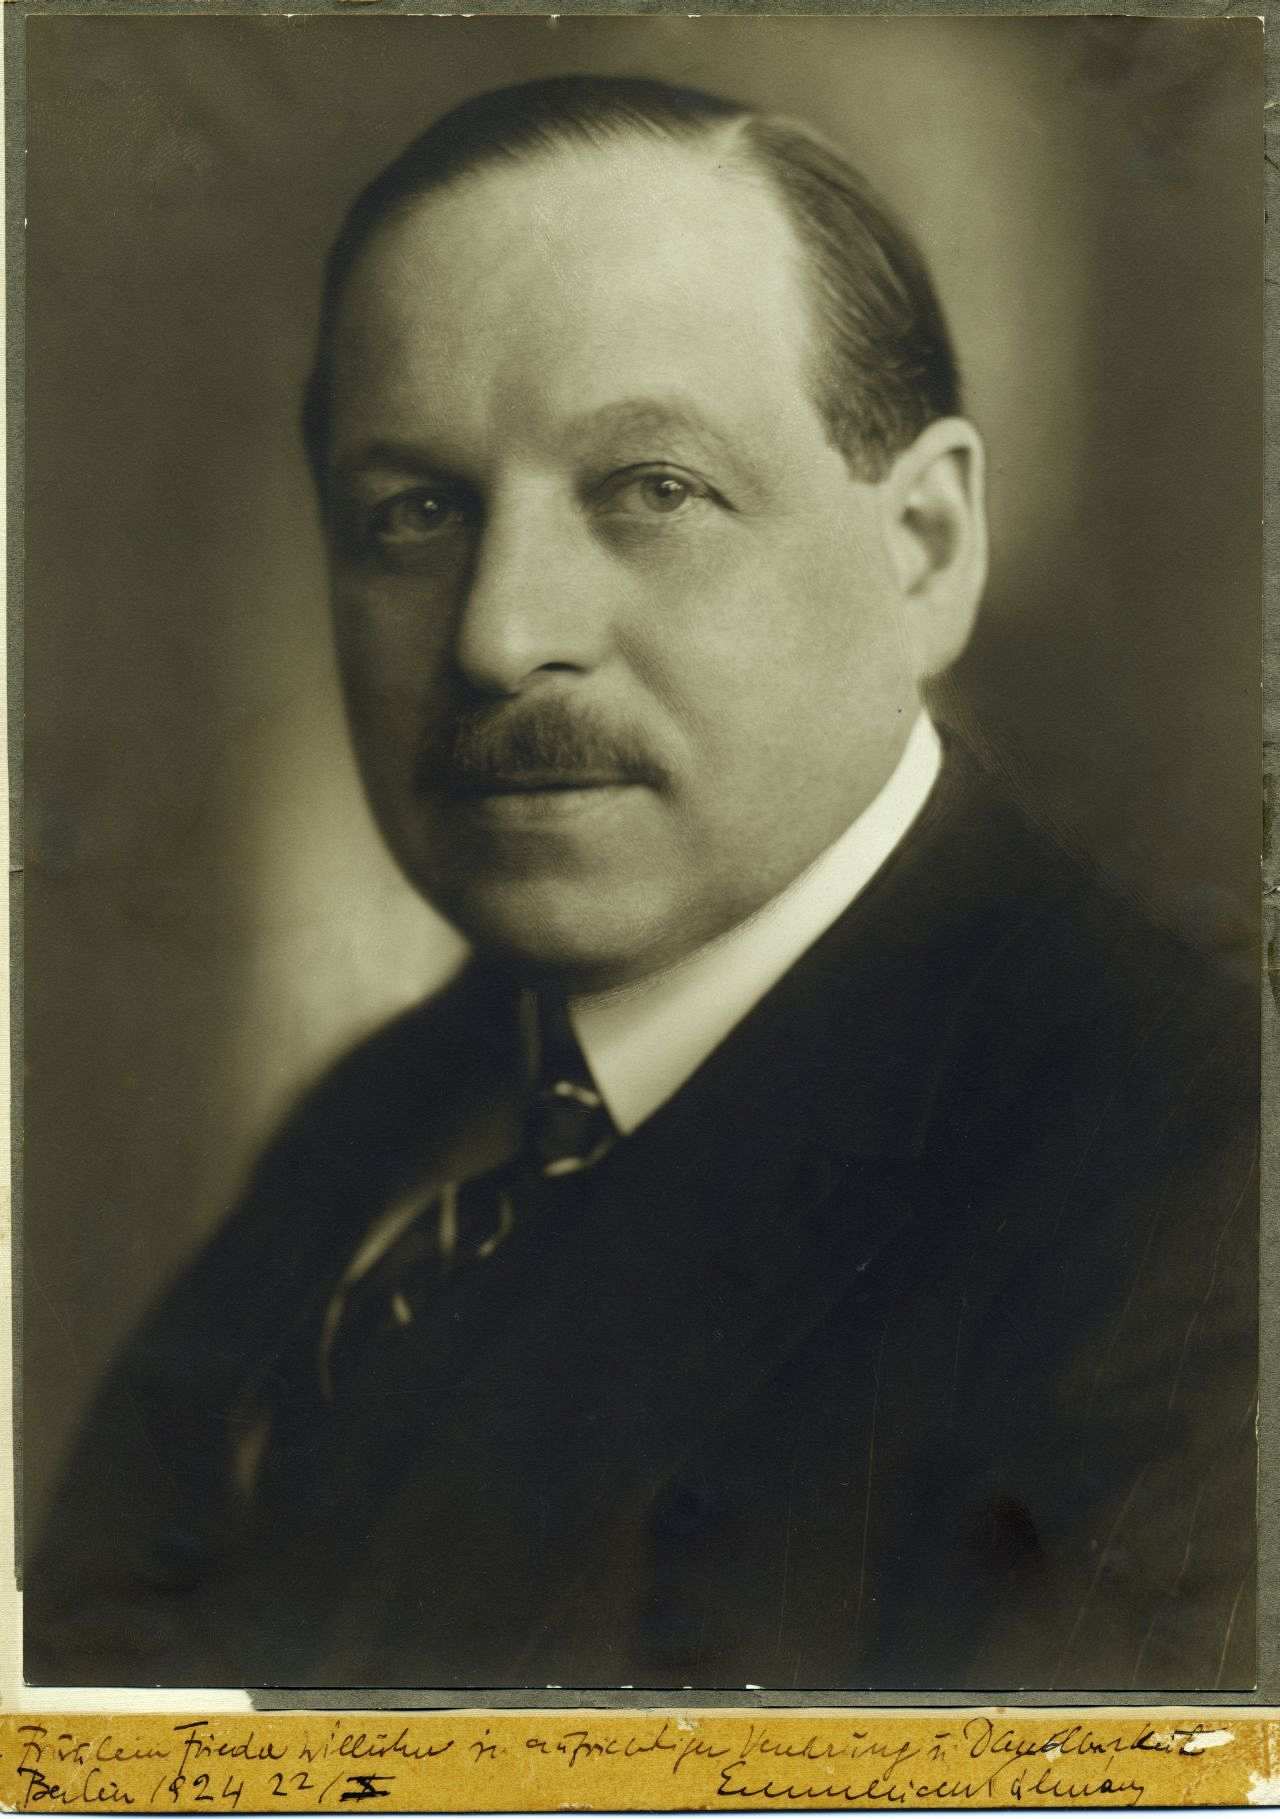 Porträtfoto des ungarischen Komponisten Emmerich Kálmán, 1924.